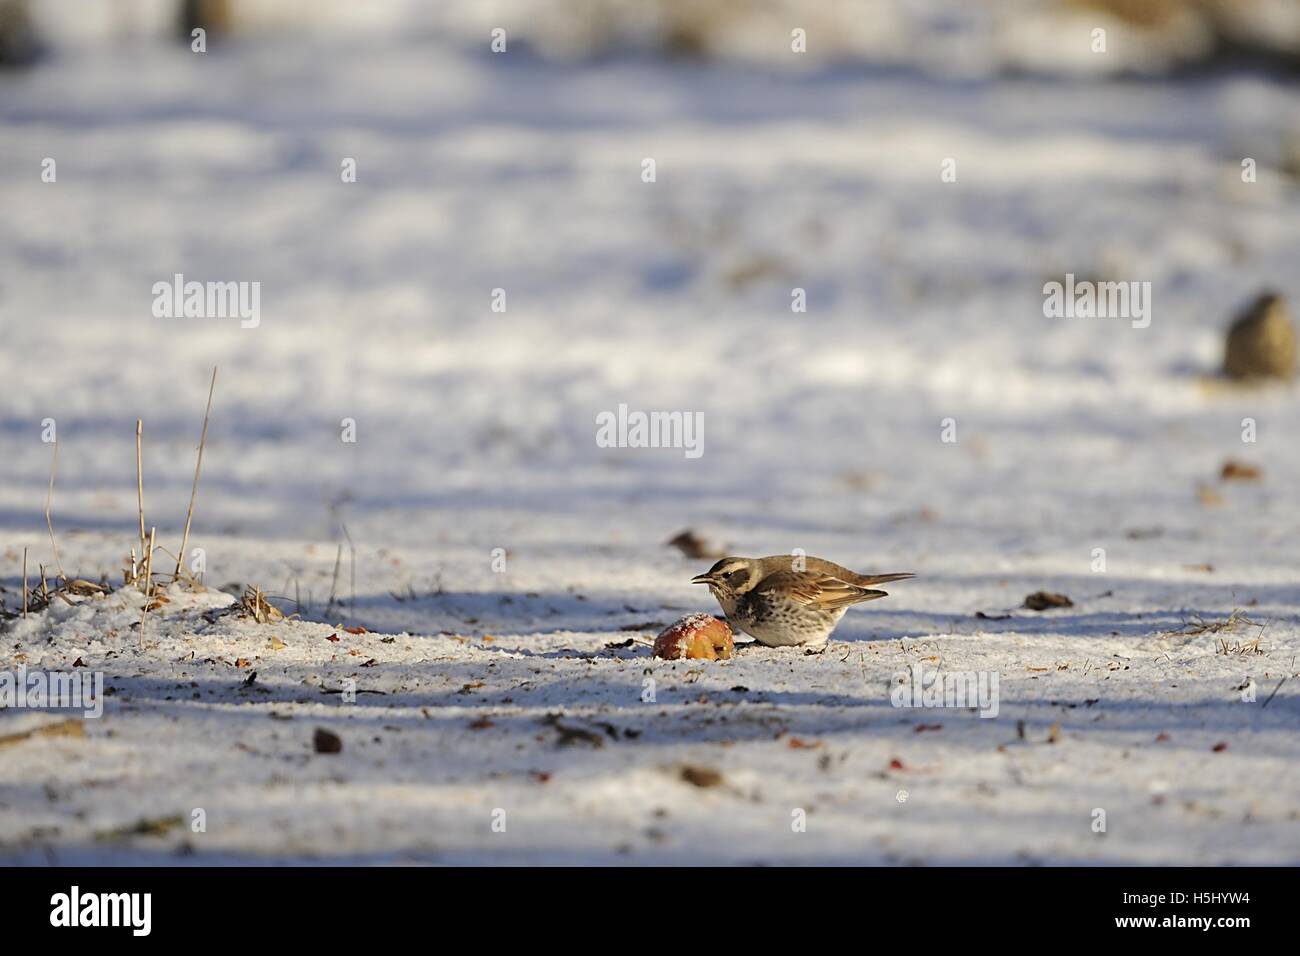 Naumanns überrannt - Dusky überrannt - Red-tailed überrannt (Turdus Naumanni - Turdus Naumanni Eunomus) Fütterung auf einen Apfel im Schnee Stockfoto